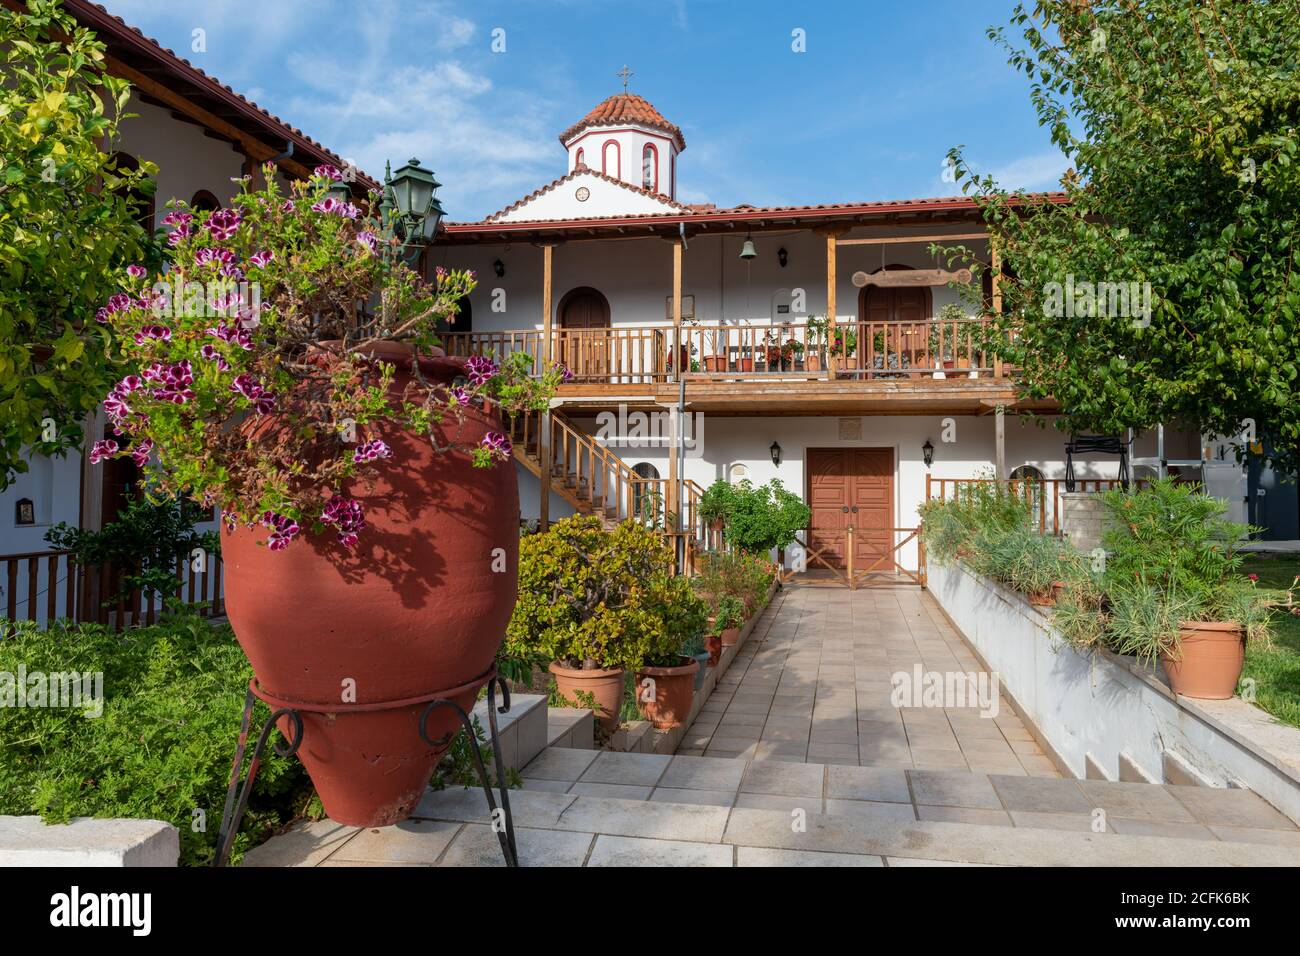 Les beaux jardins et bâtiments du monastère de Faneromeni, une attraction religieuse et touristique grecque orthodoxe majeure. Banque D'Images